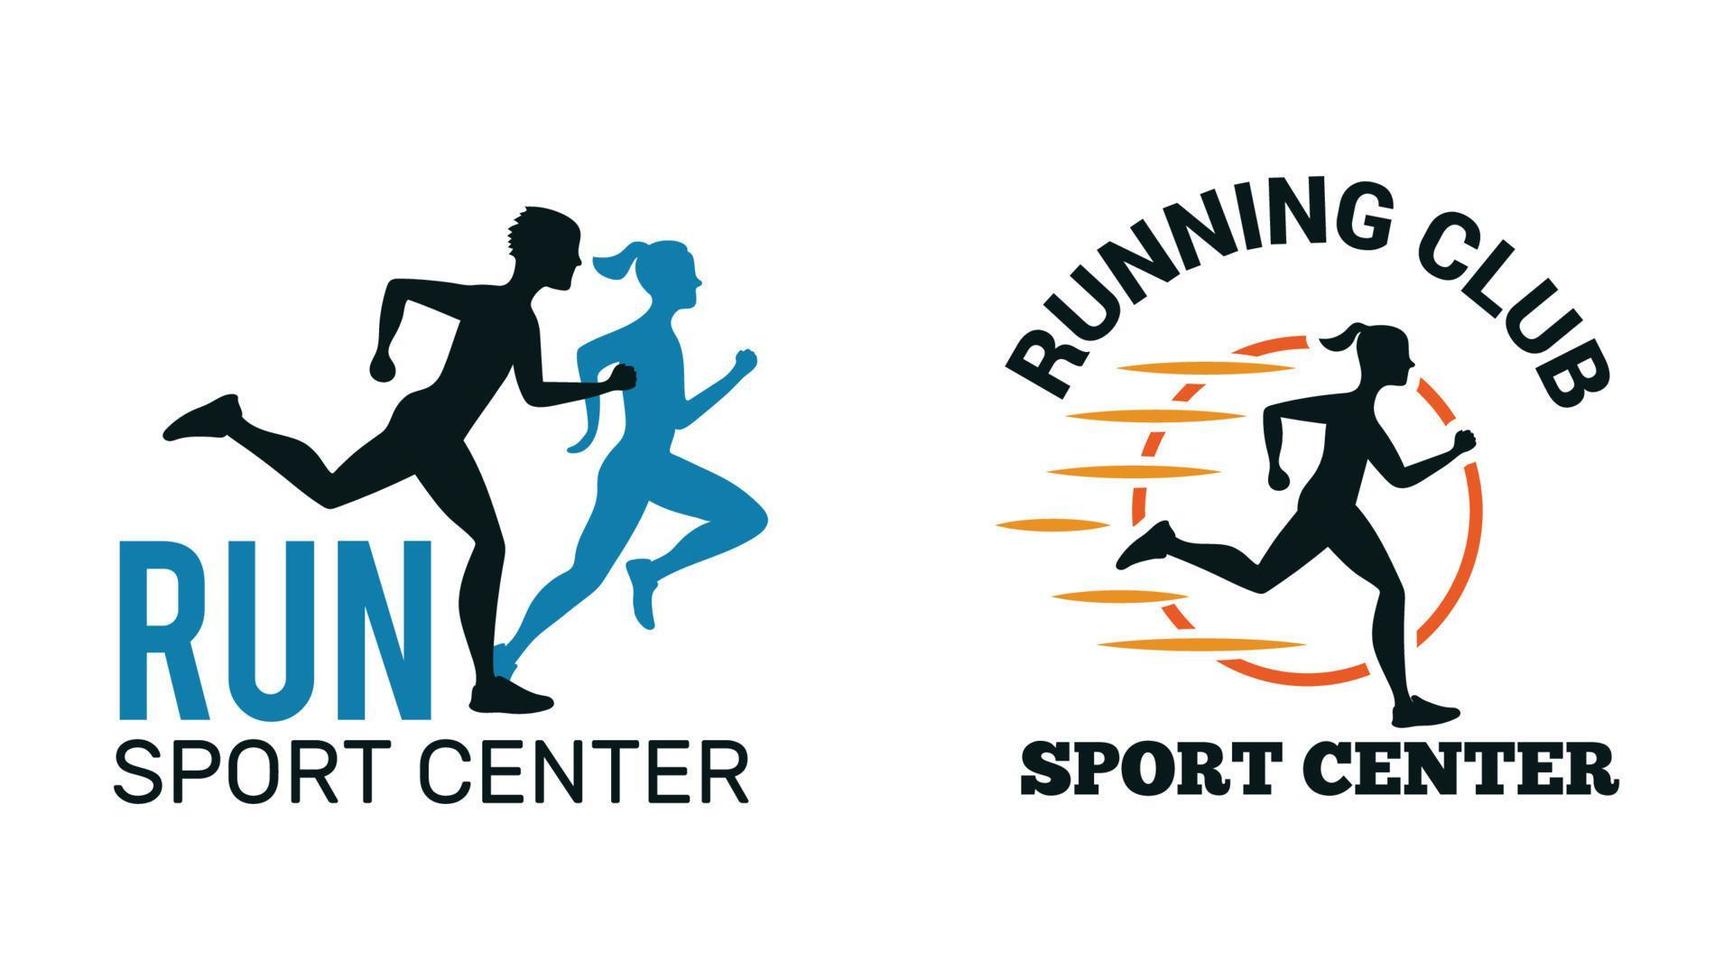 logotipo de corrida maratona emblemas do clube símbolos esportivos pernas de sapato pulando corrida coleção de vetores de pessoas esporte velocidade fitness corredor distância clube corrida ilustração vetor livre